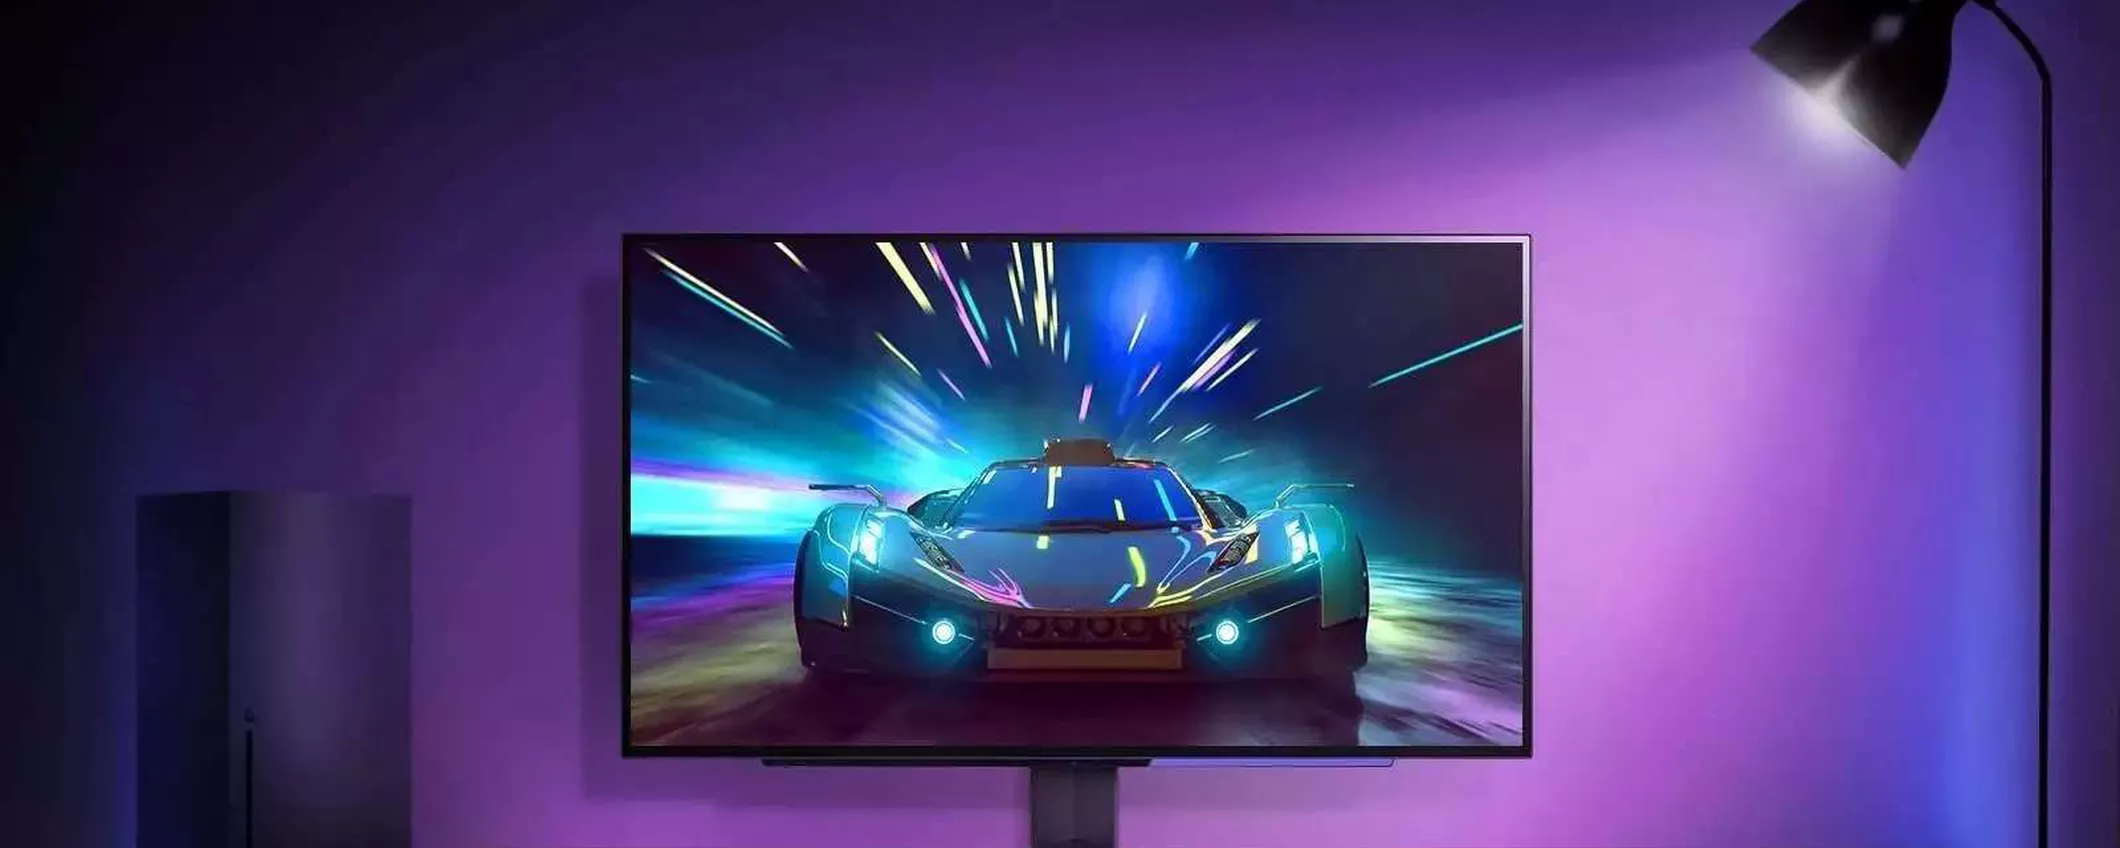 Questo monitor da gaming da 144 Hz costa appena 129€ su Amazon